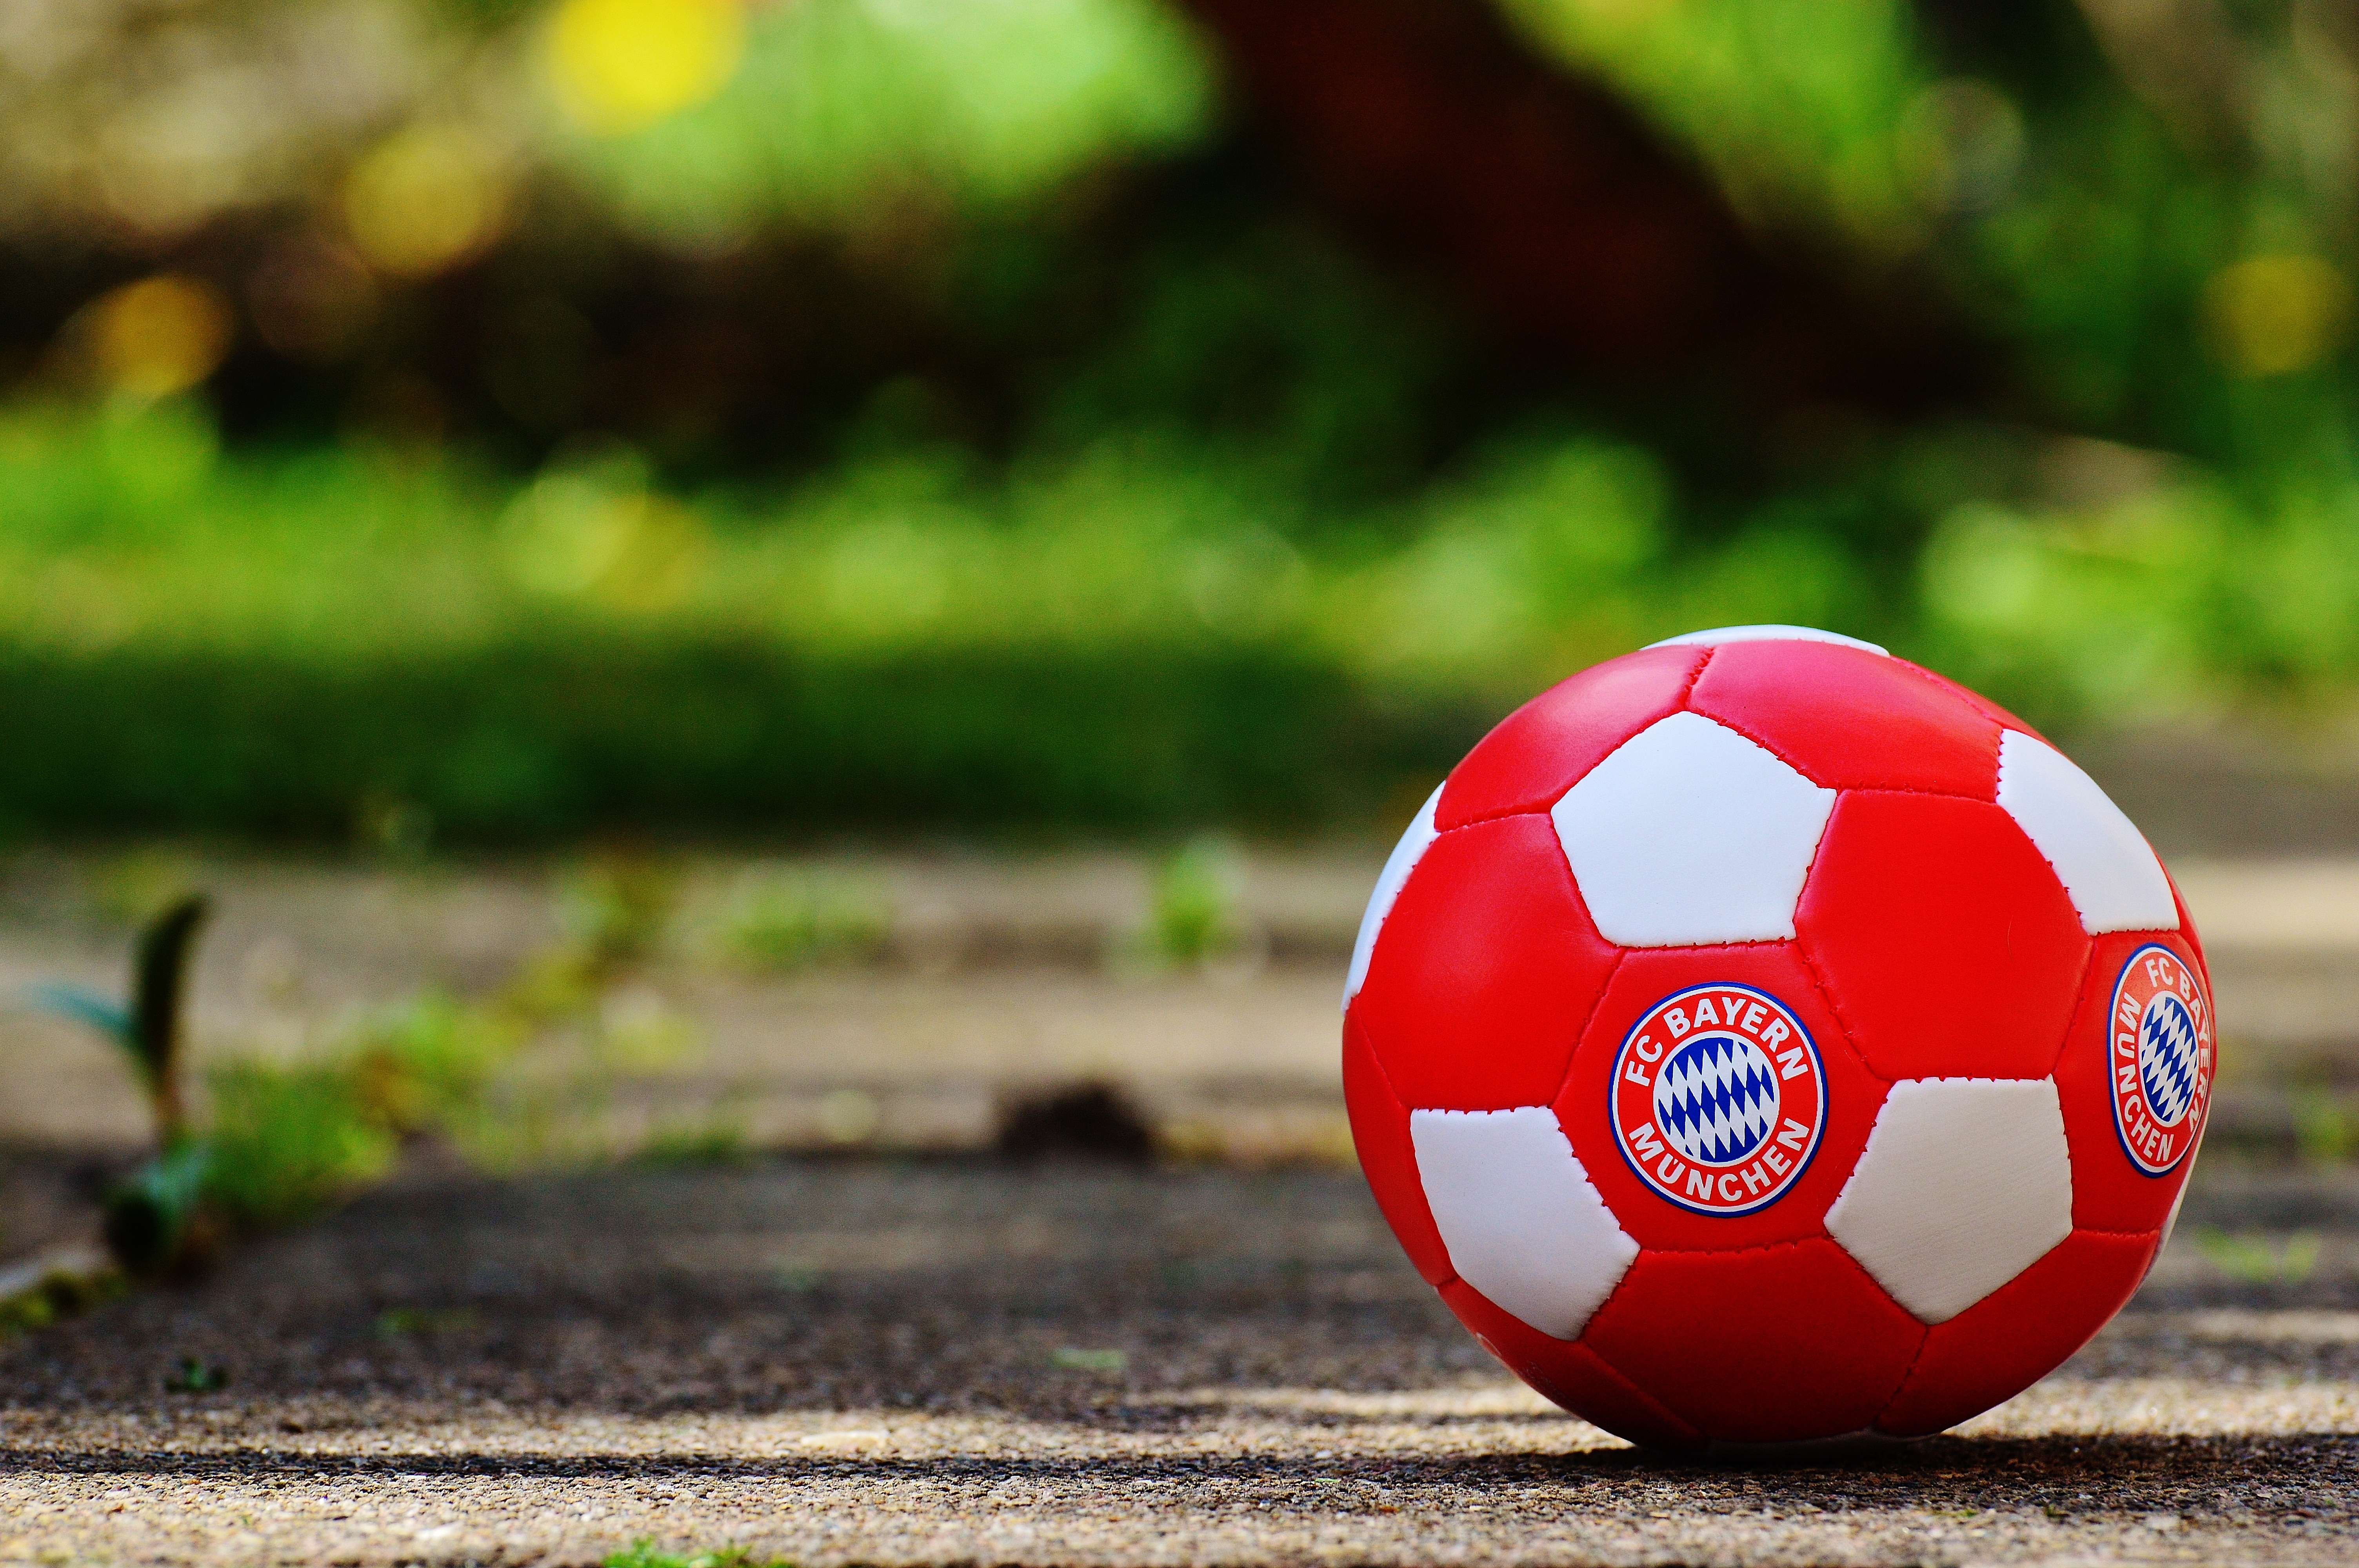 Bayern Munich, Bavaria, Football Club, red, sport